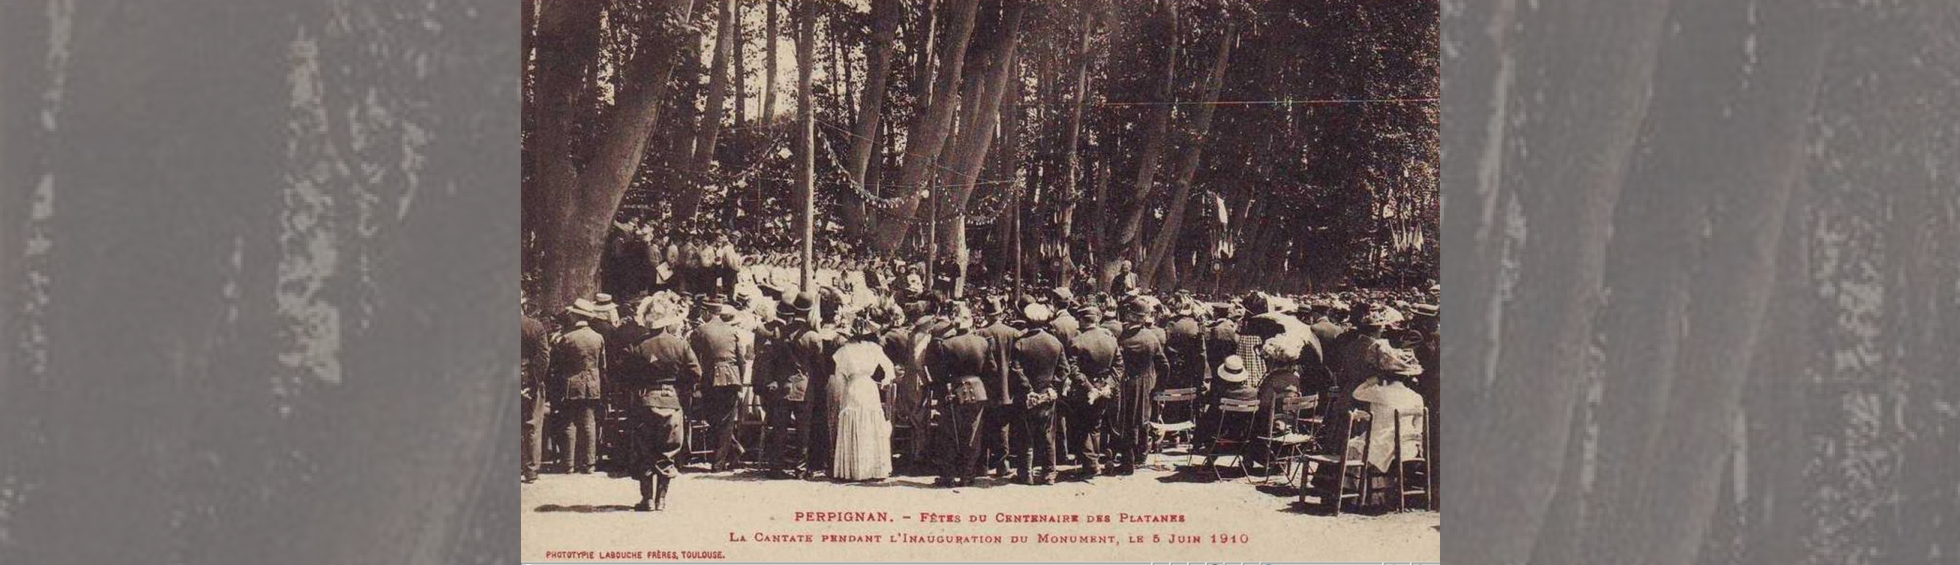 Des personnes entrain d'écouter une cantate  à l'ombre des platanes pour la fête du centenaire de la promenade en 1910